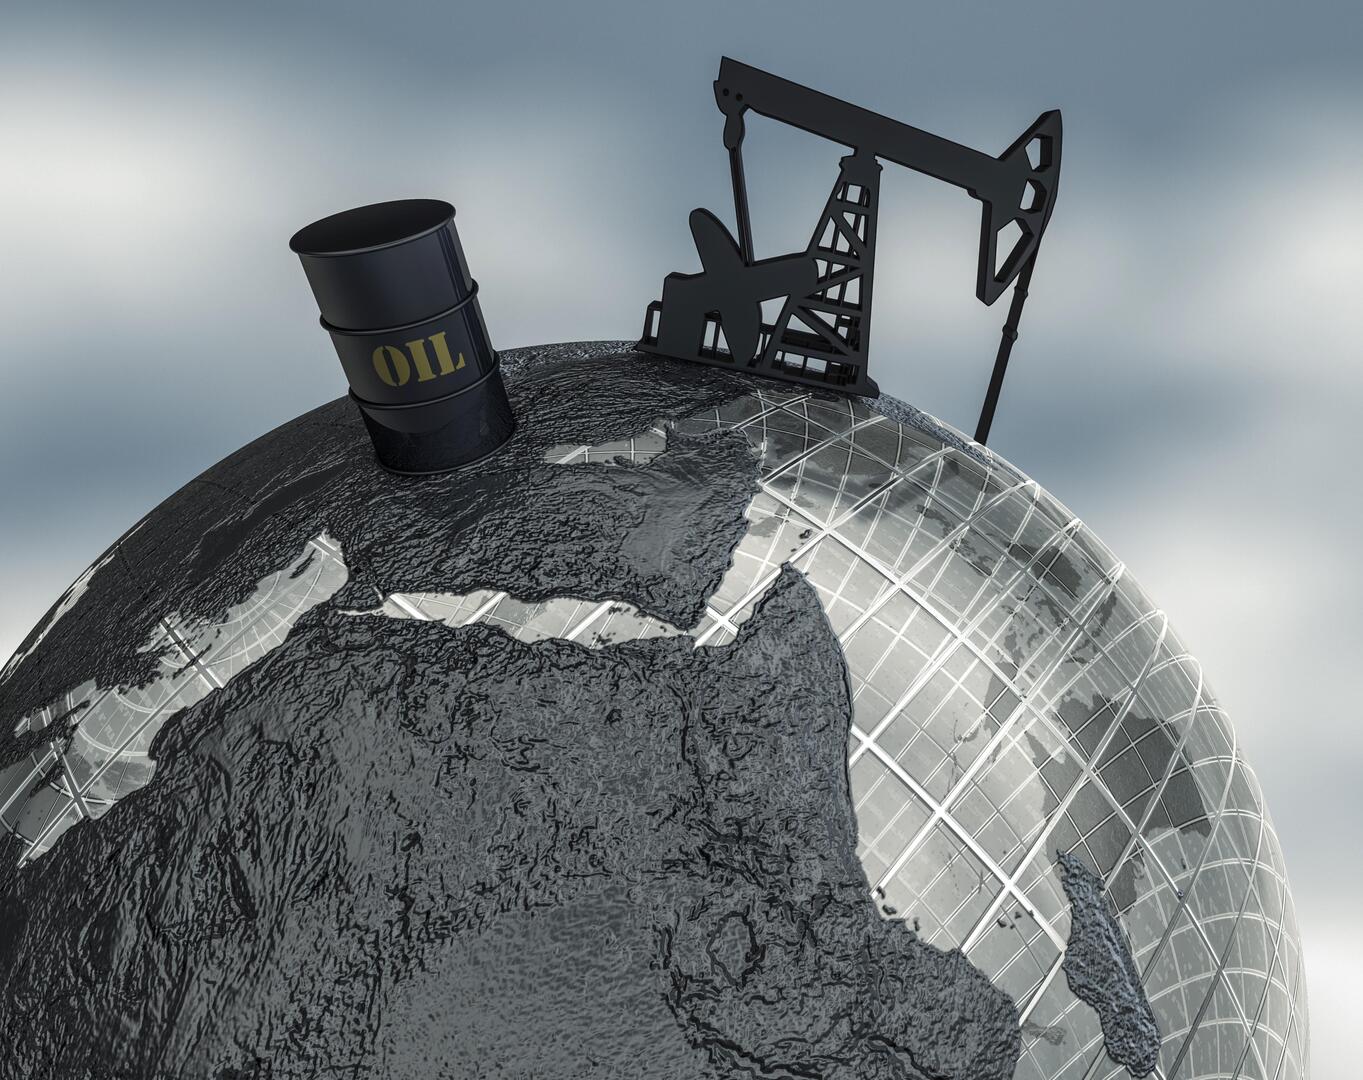 بعد قرار روسيا والسعودية حول إمدادات النفط.. كيف تم تداول أسعار الذهب الأسود؟